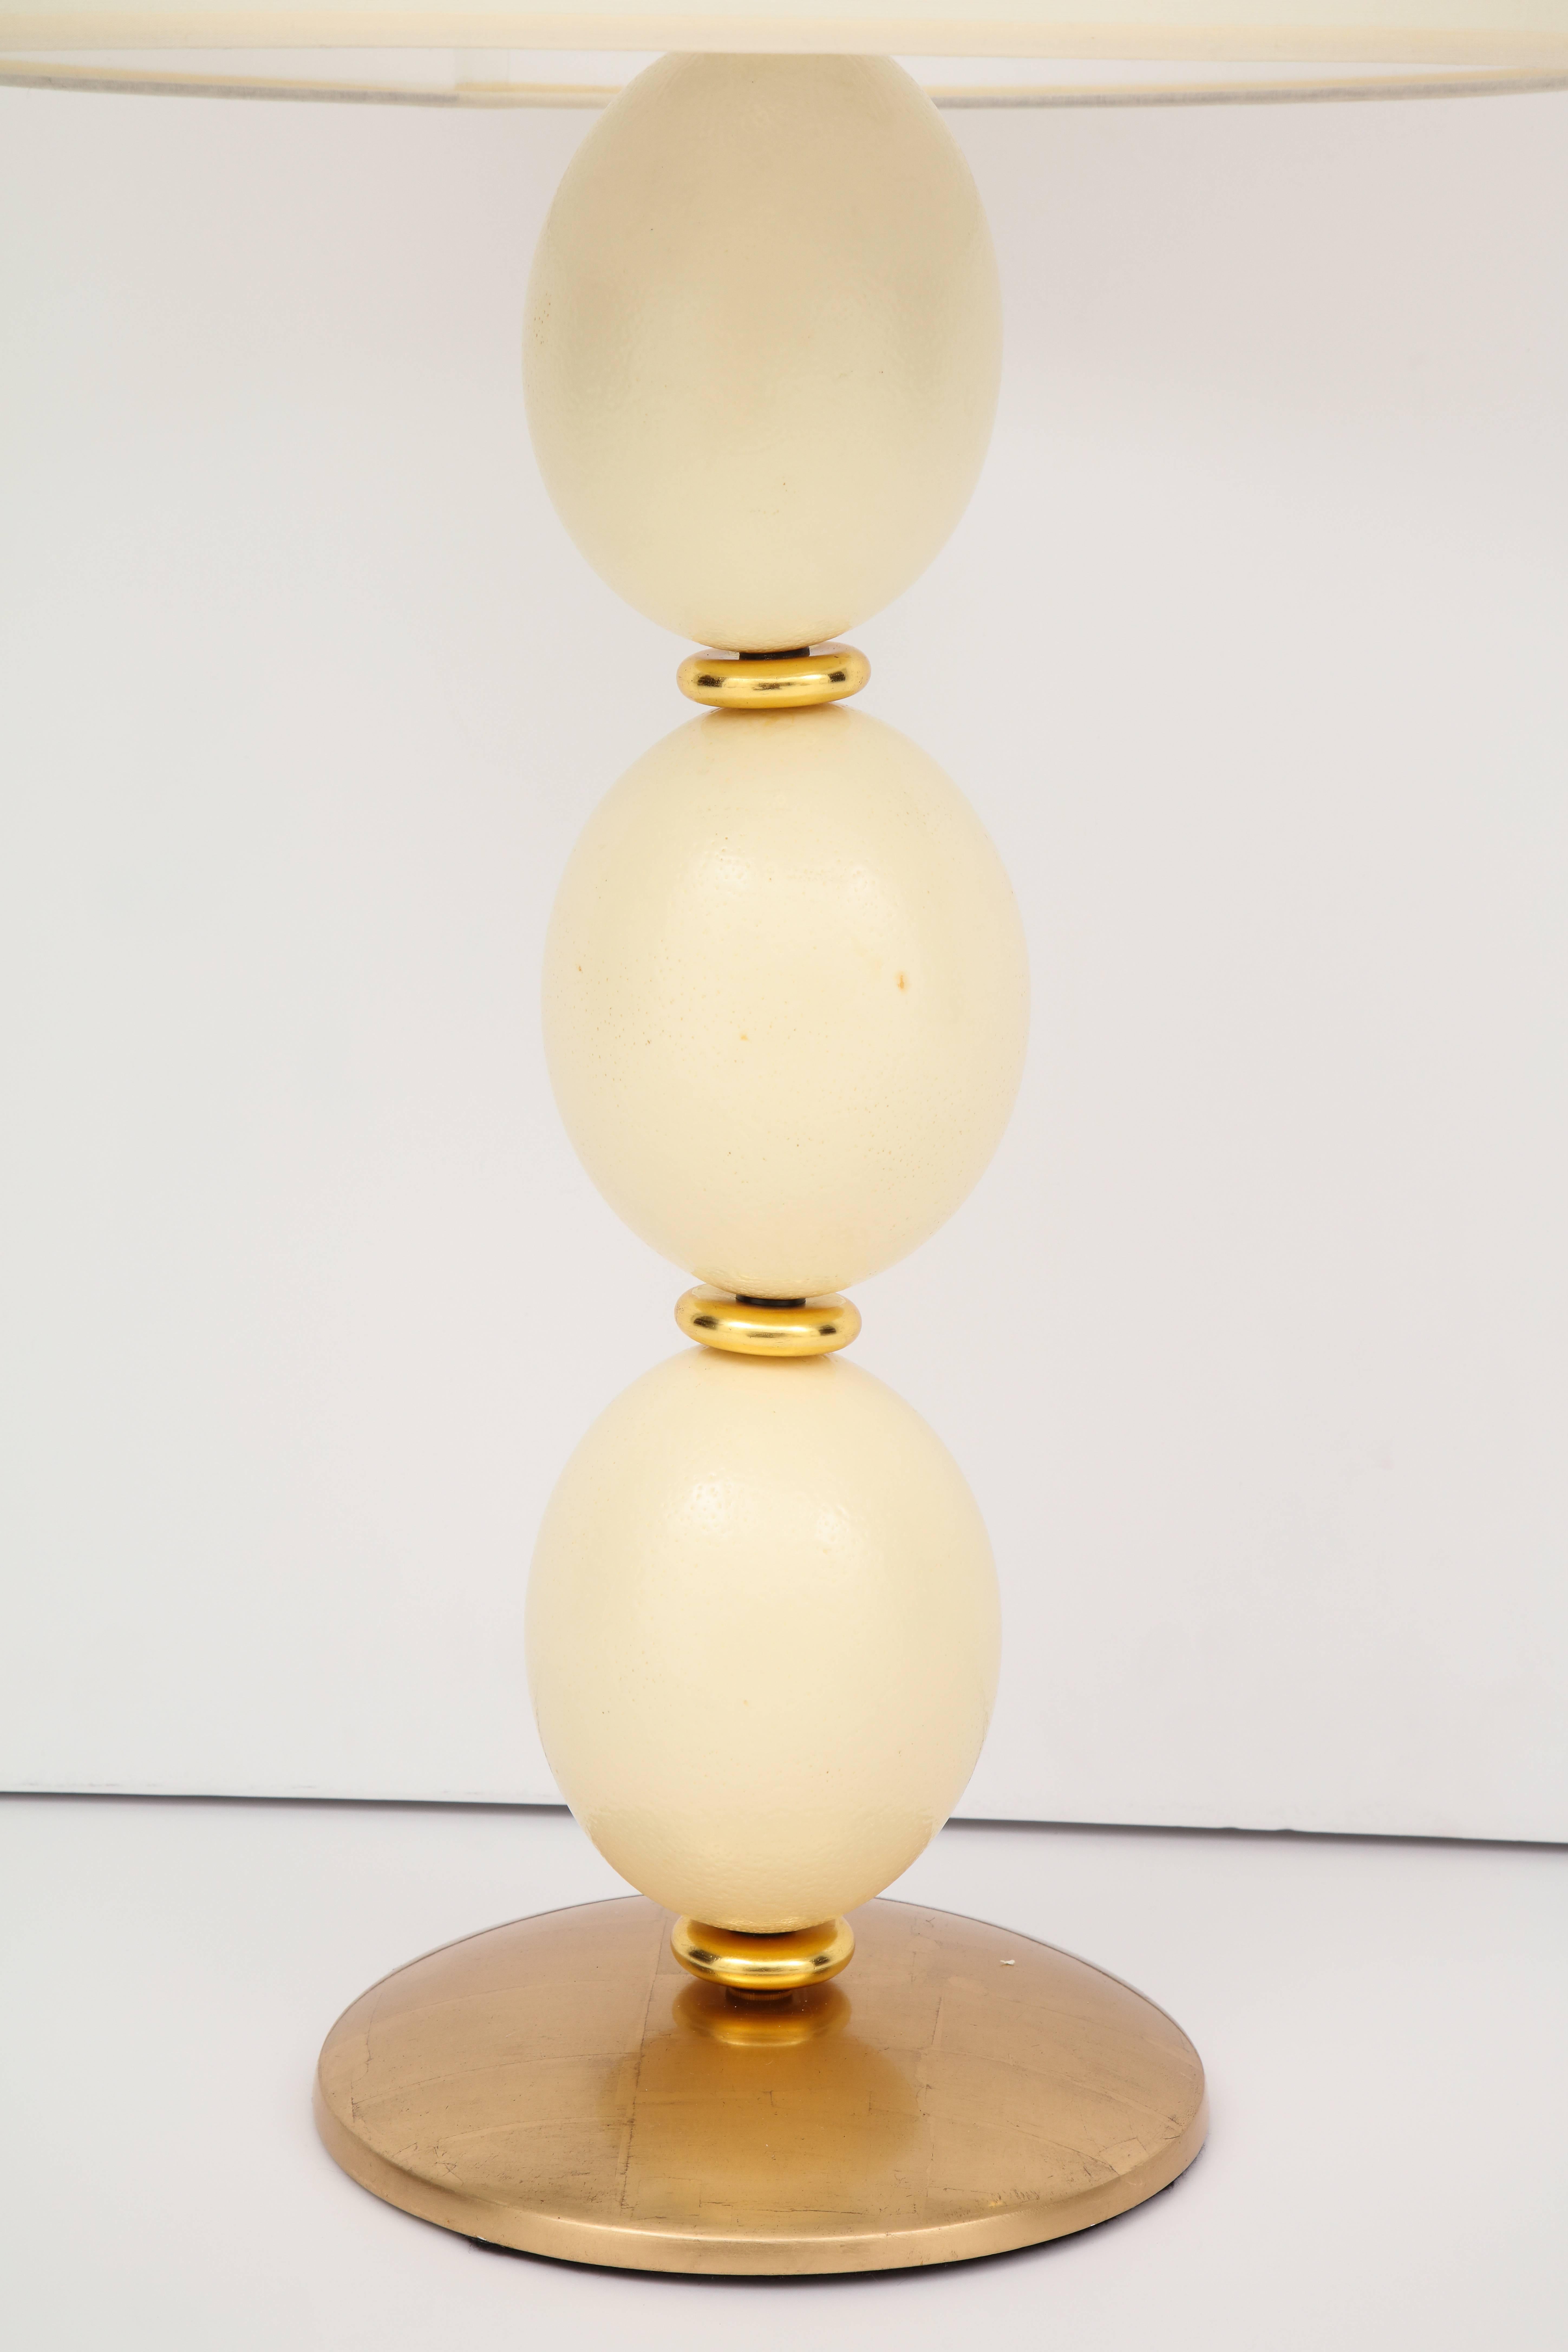 Une lampe de table faite sur mesure en bois doré sculpté et en œuf d'autruche. La base est dorée à l'or rose mat 28 carats, les anneaux en or jaune bruni, le fleuron en laiton doré et en os sculpté.
Abat-jour inclus si désiré.
Taille : 33